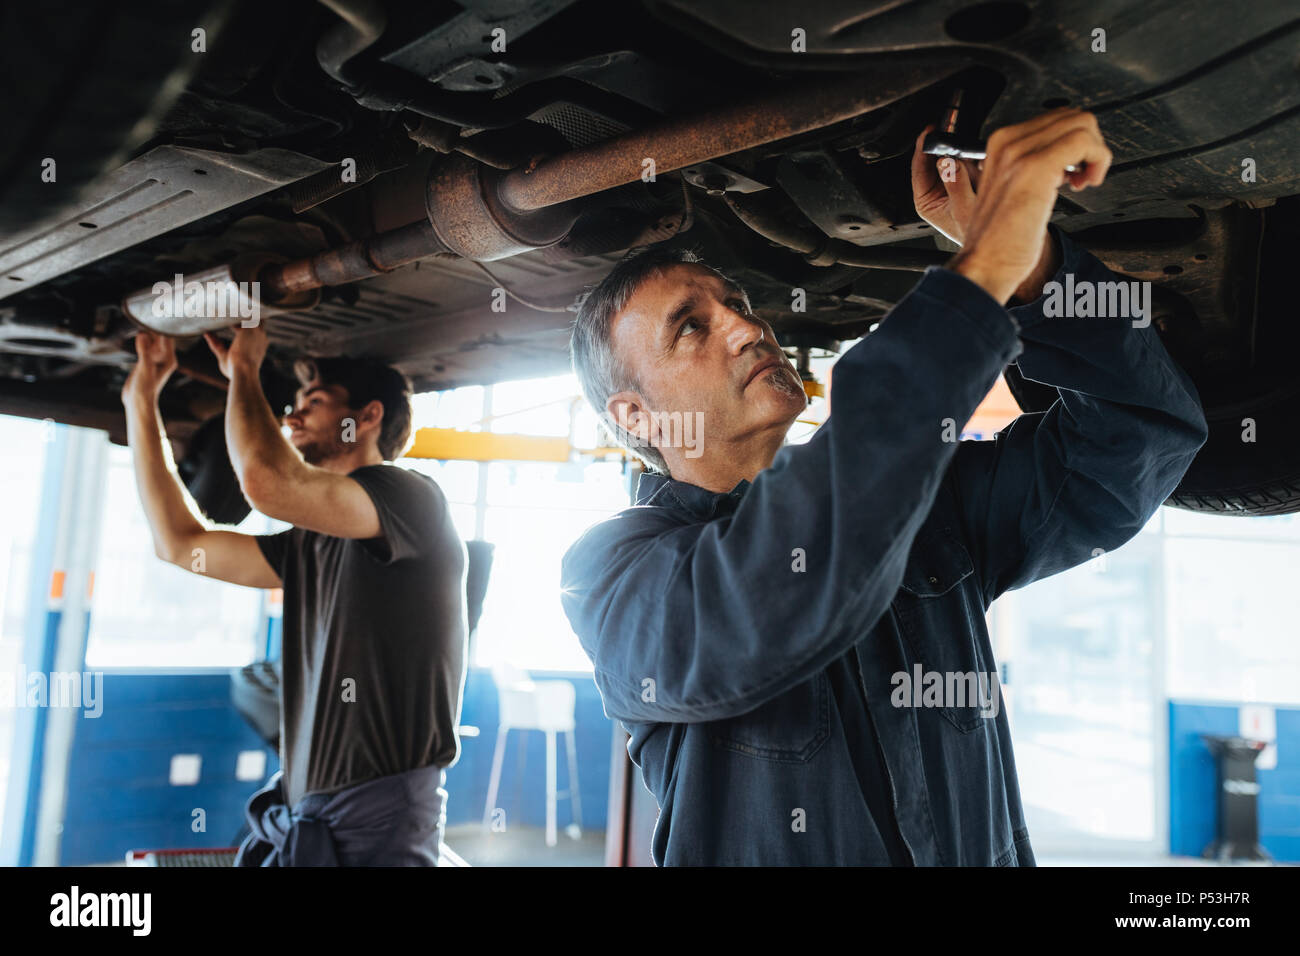 Zwei Mechaniker, der sich unter einem Auto zu schaffen. Männer in Garage reparieren Abgasanlage eines angehobenen Automobil. Stockfoto